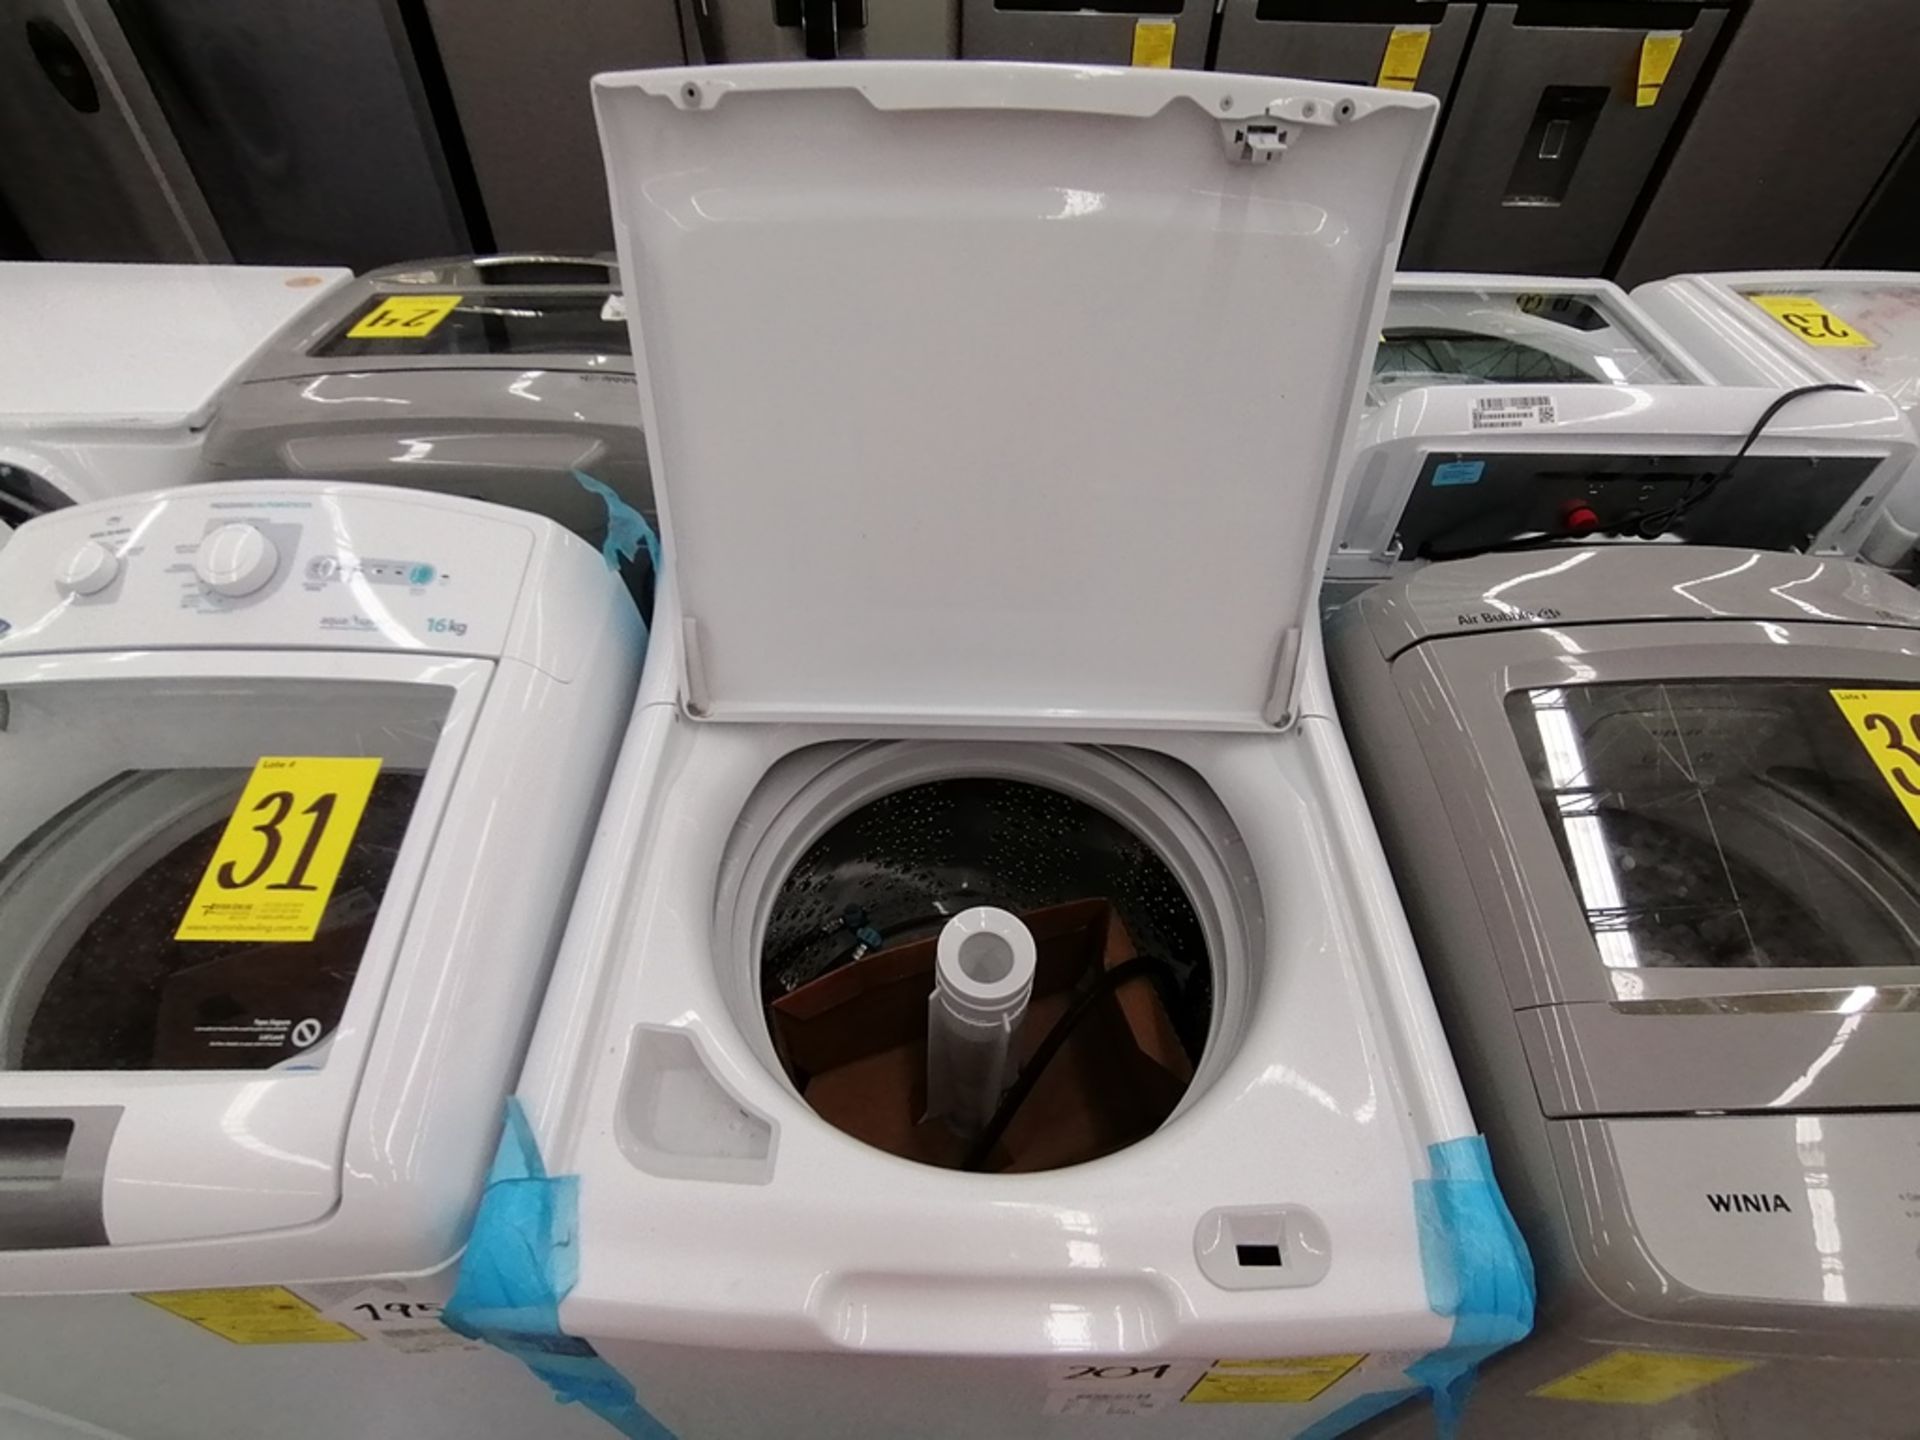 Lote de 3 lavadoras contiene: 1 Lavadora de 17KG, Marca Easy, Modelo LEA77114CBAB03, Serie 2105S552 - Image 29 of 30